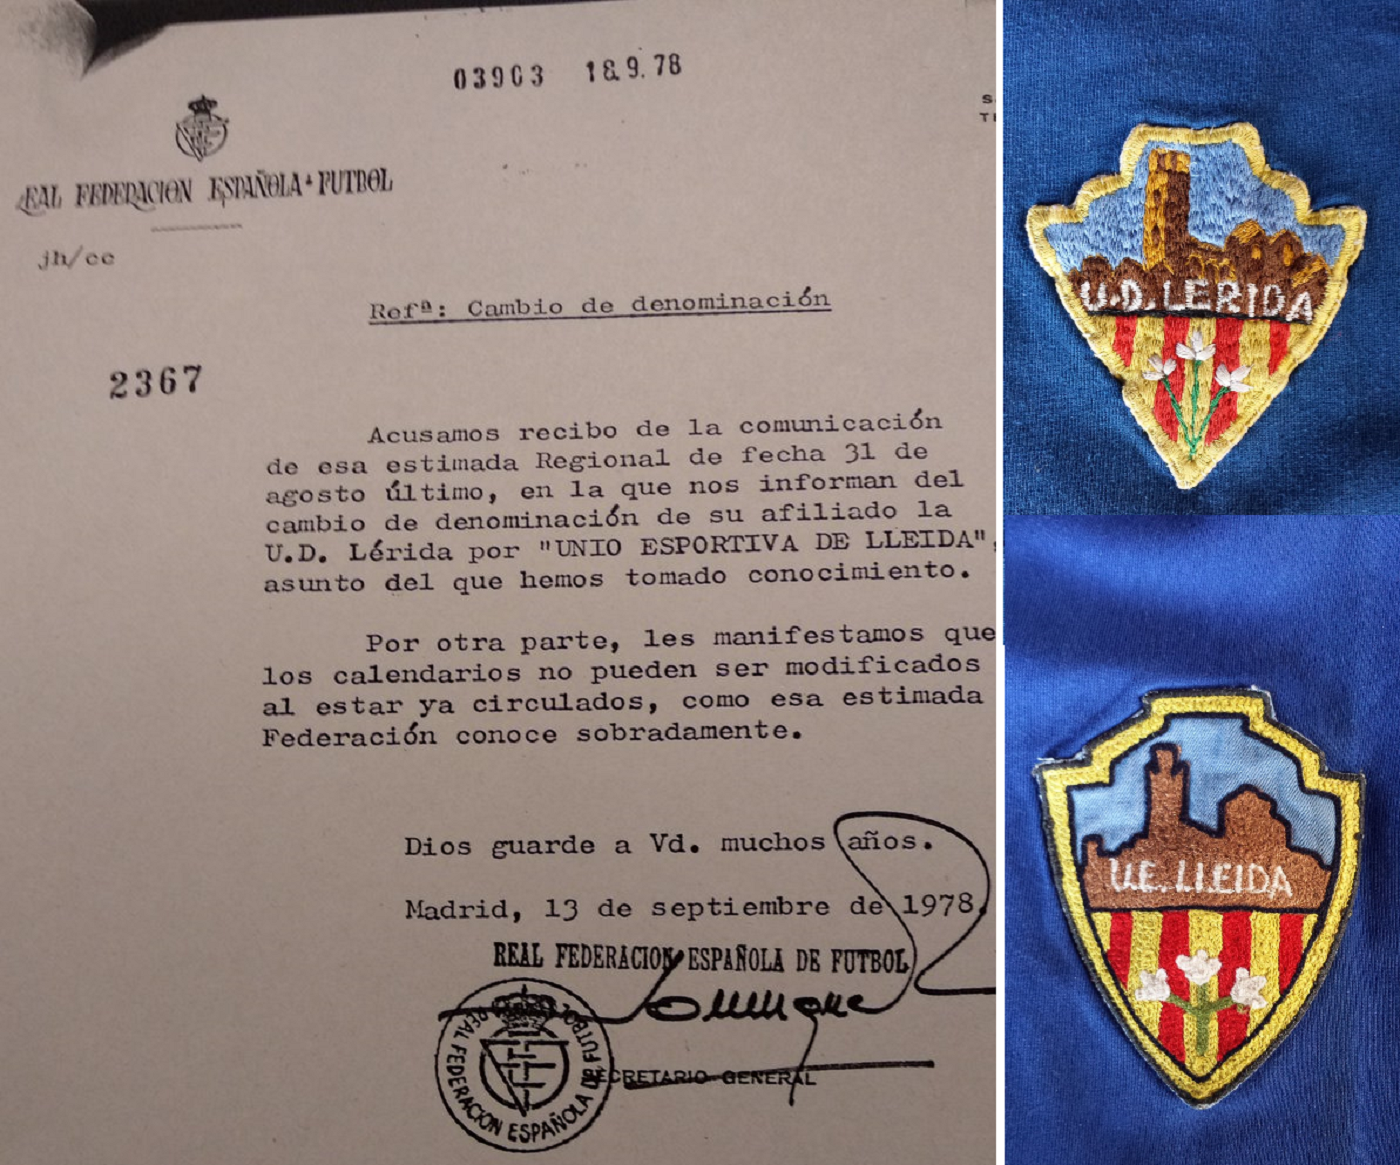 La UE Lleida, primera entidad deportiva en normalizar el nombre